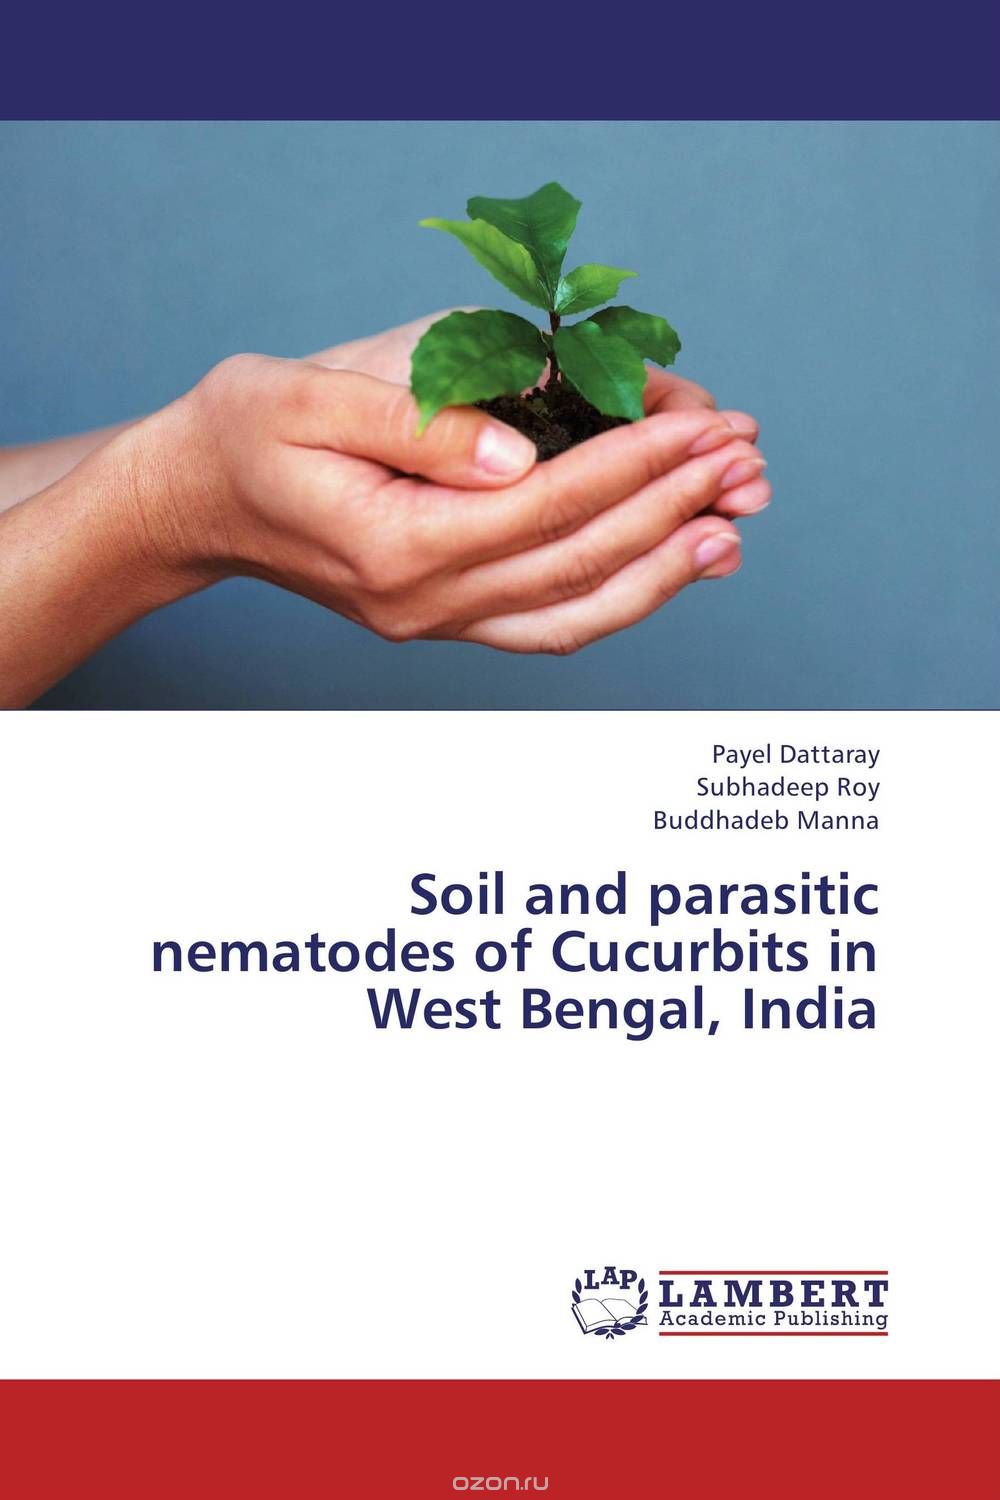 Скачать книгу "Soil and parasitic nematodes of Cucurbits in West Bengal, India"